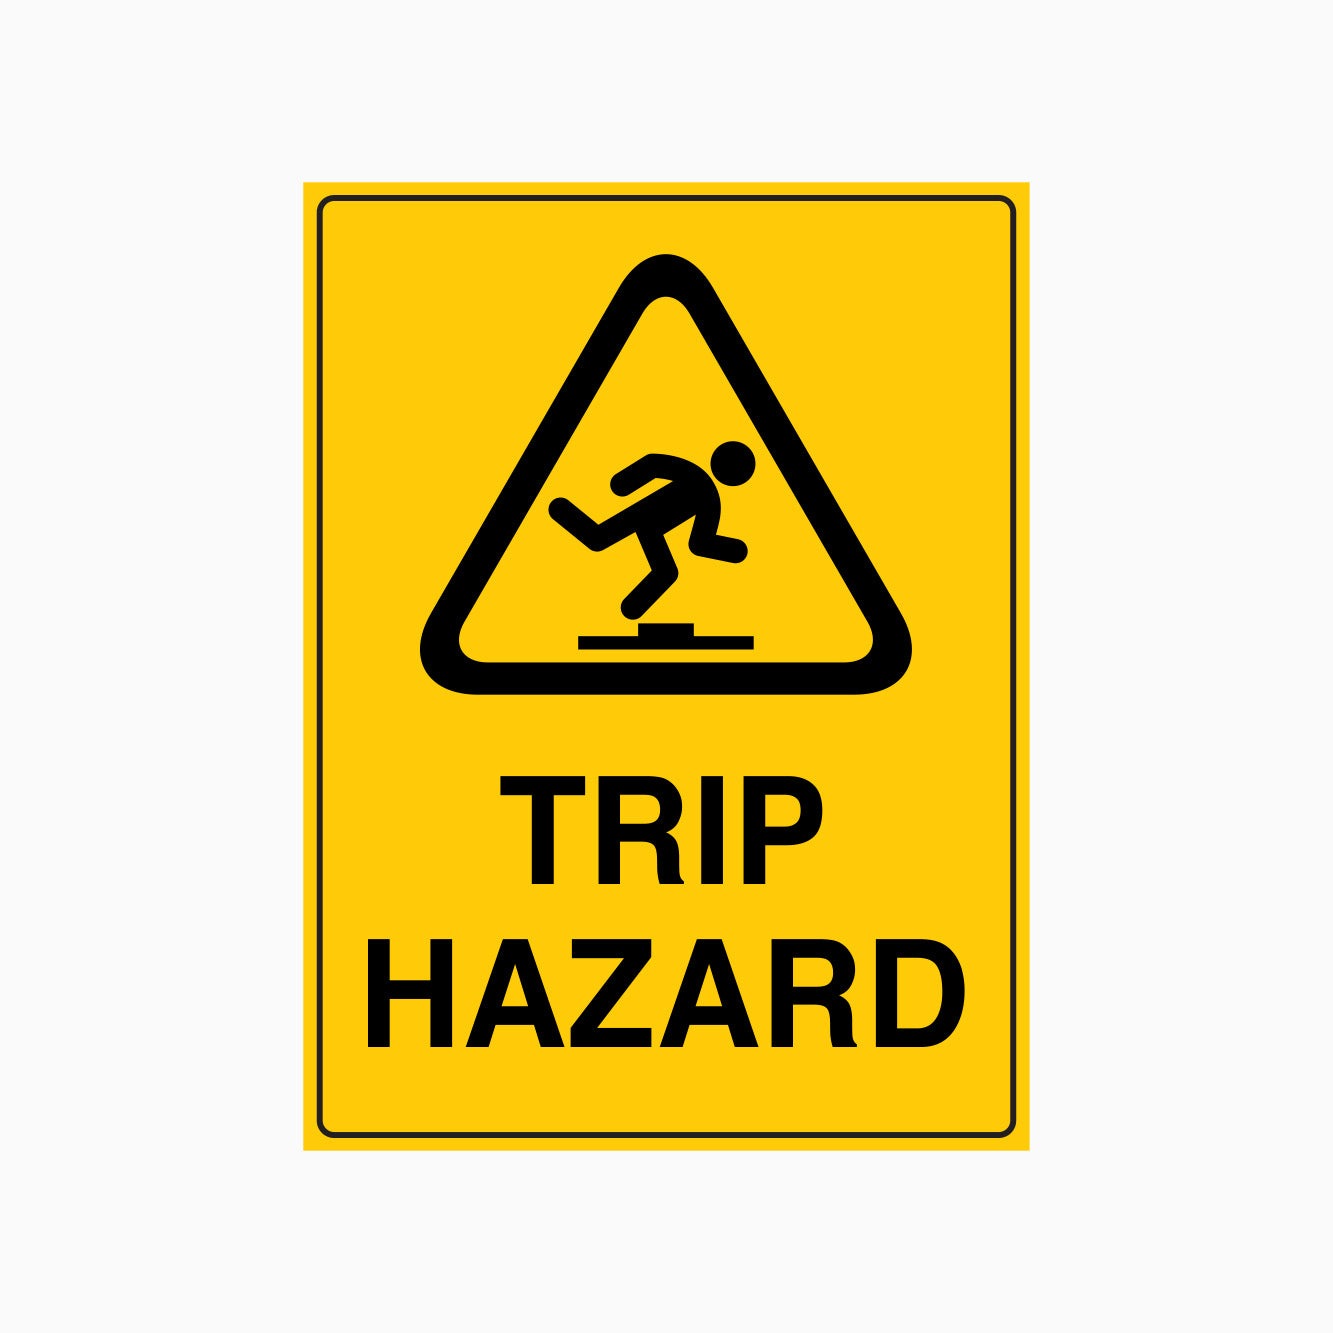 TRIP HAZARD SIGN